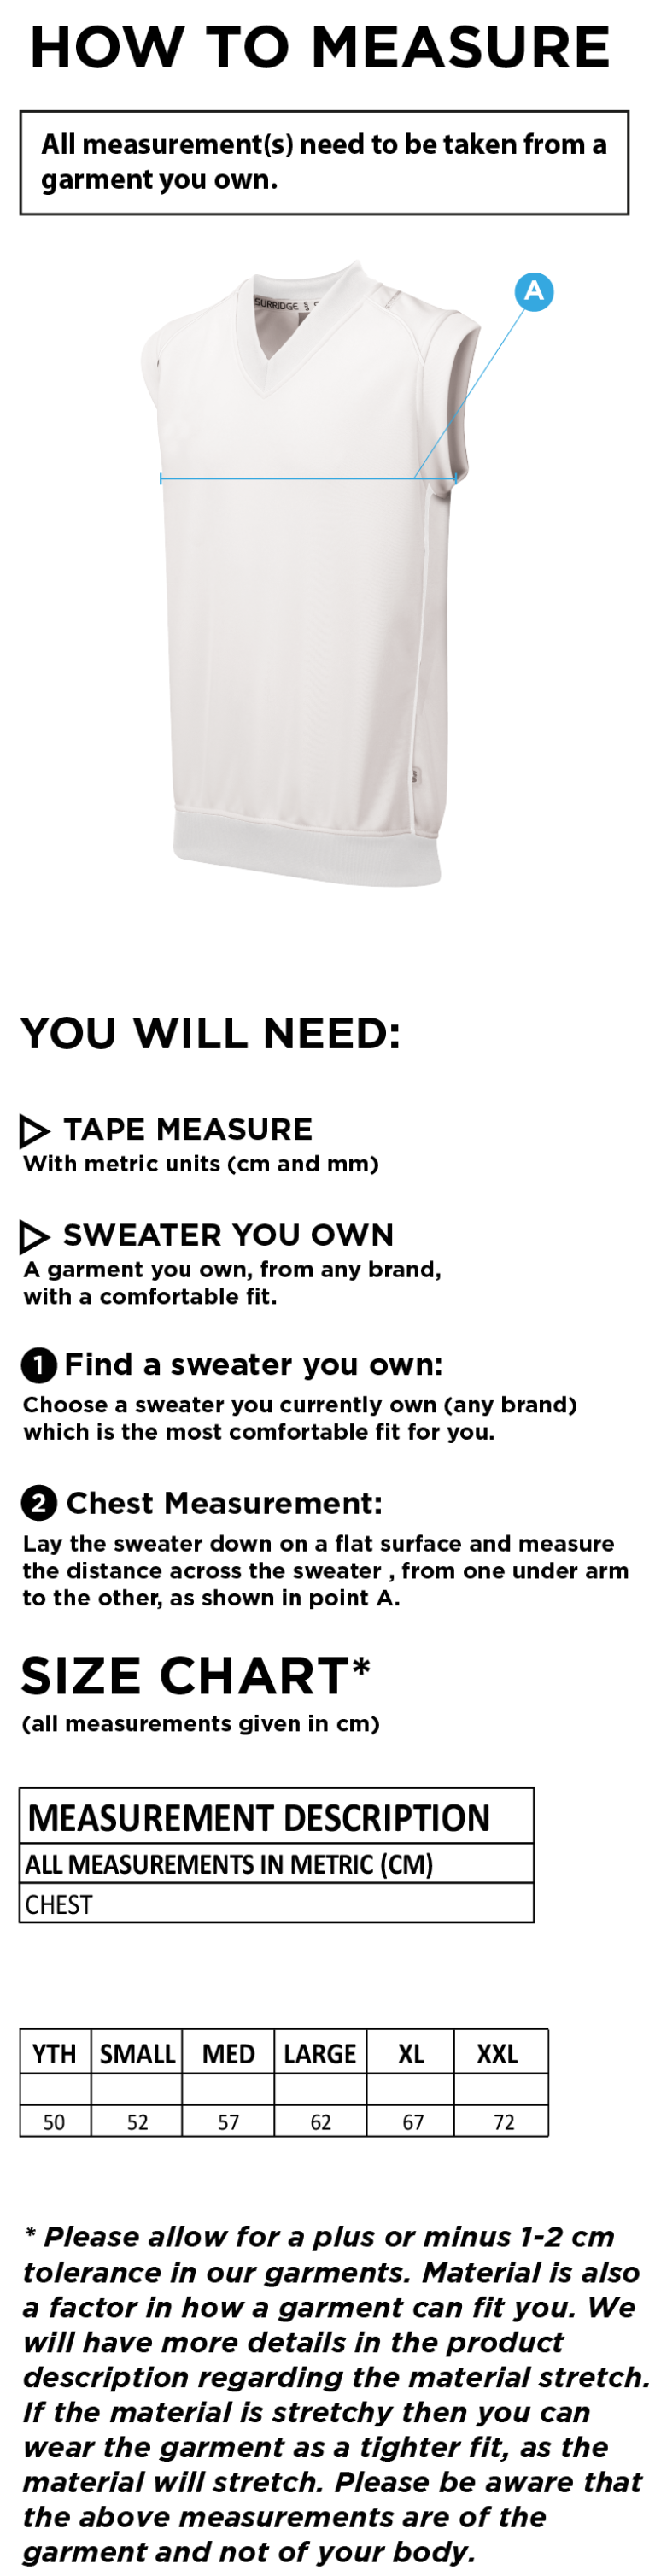 Cornwood CC - Sleeveless Sweater - Size Guide